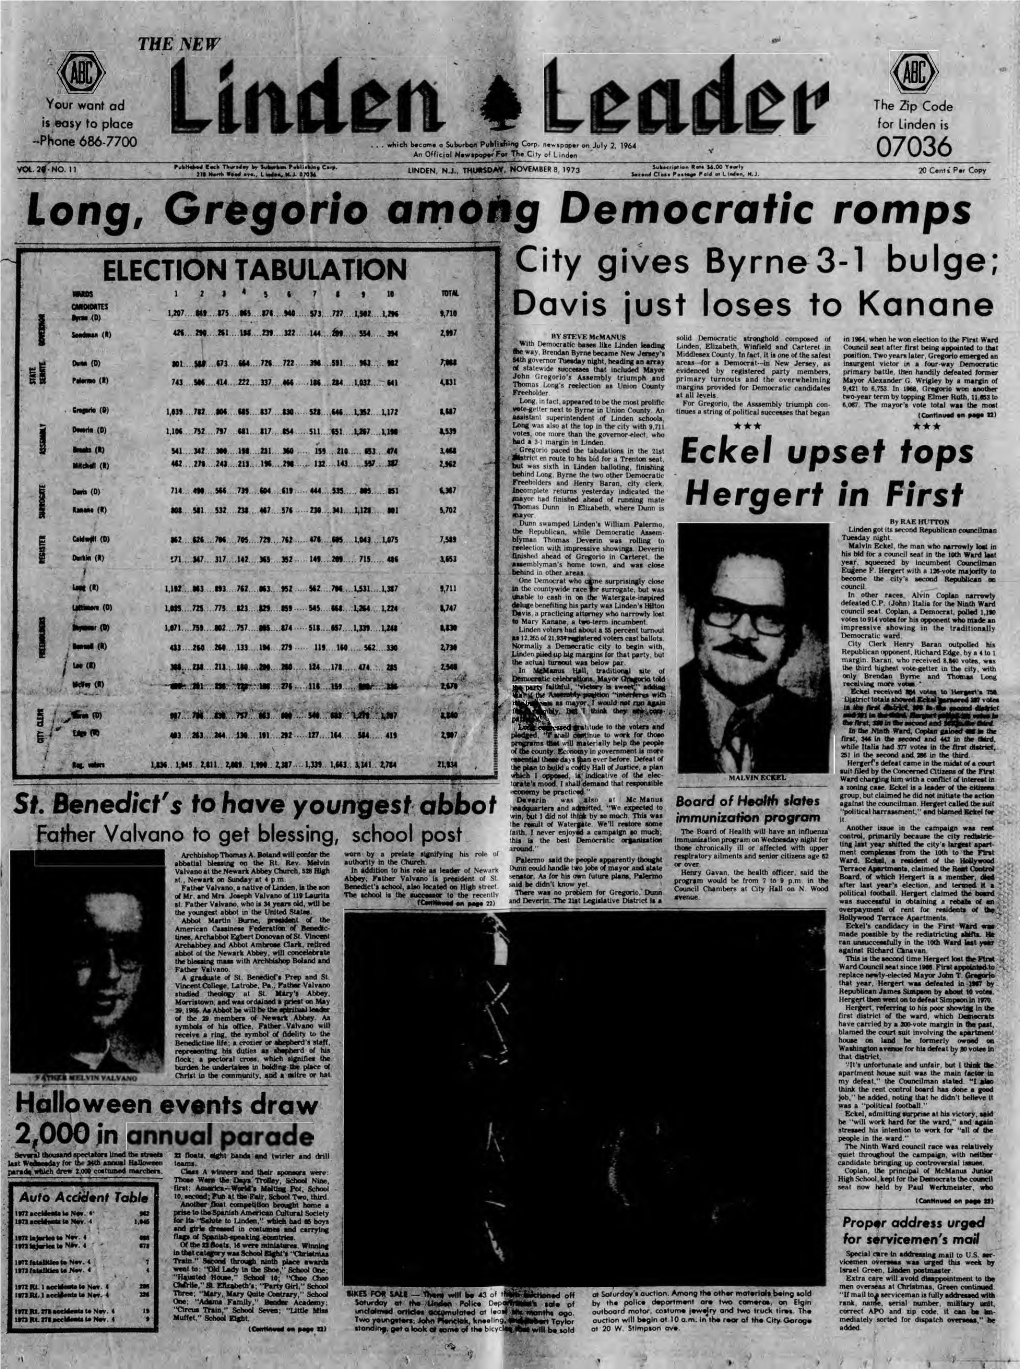 Long, Gregorio Among Democratic Romps